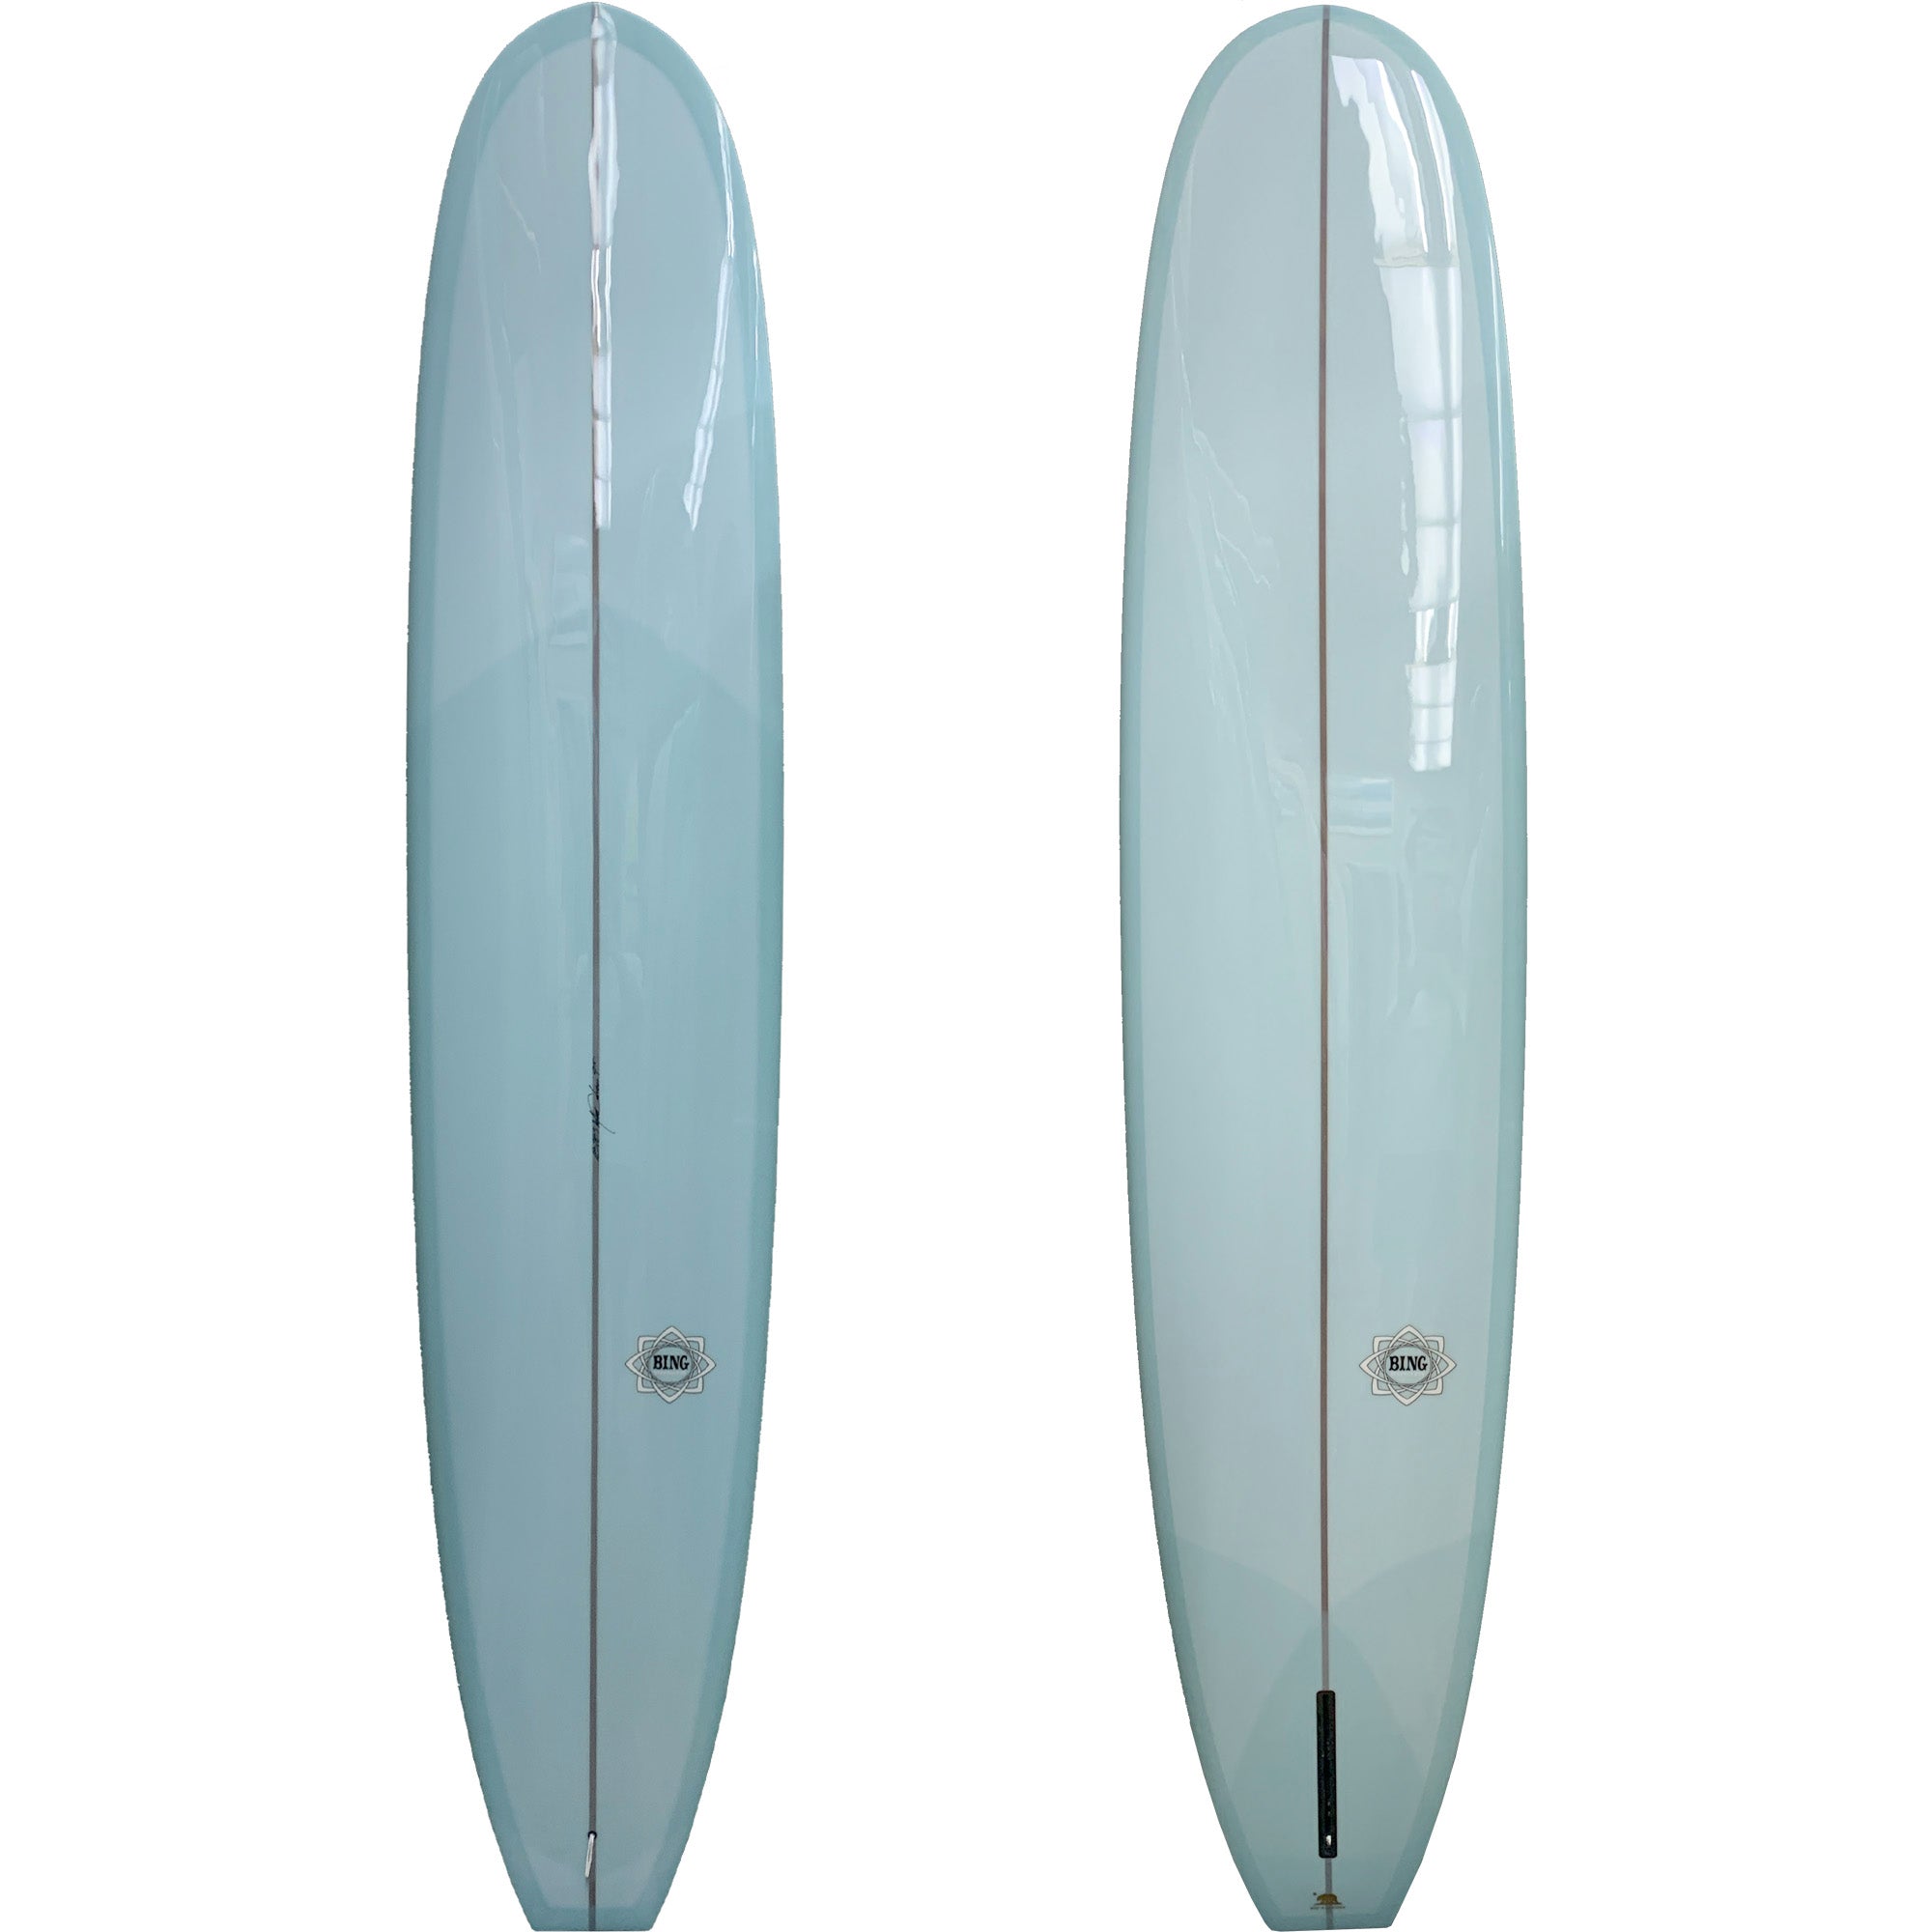 Bing Trimulux Longboard Surfboard